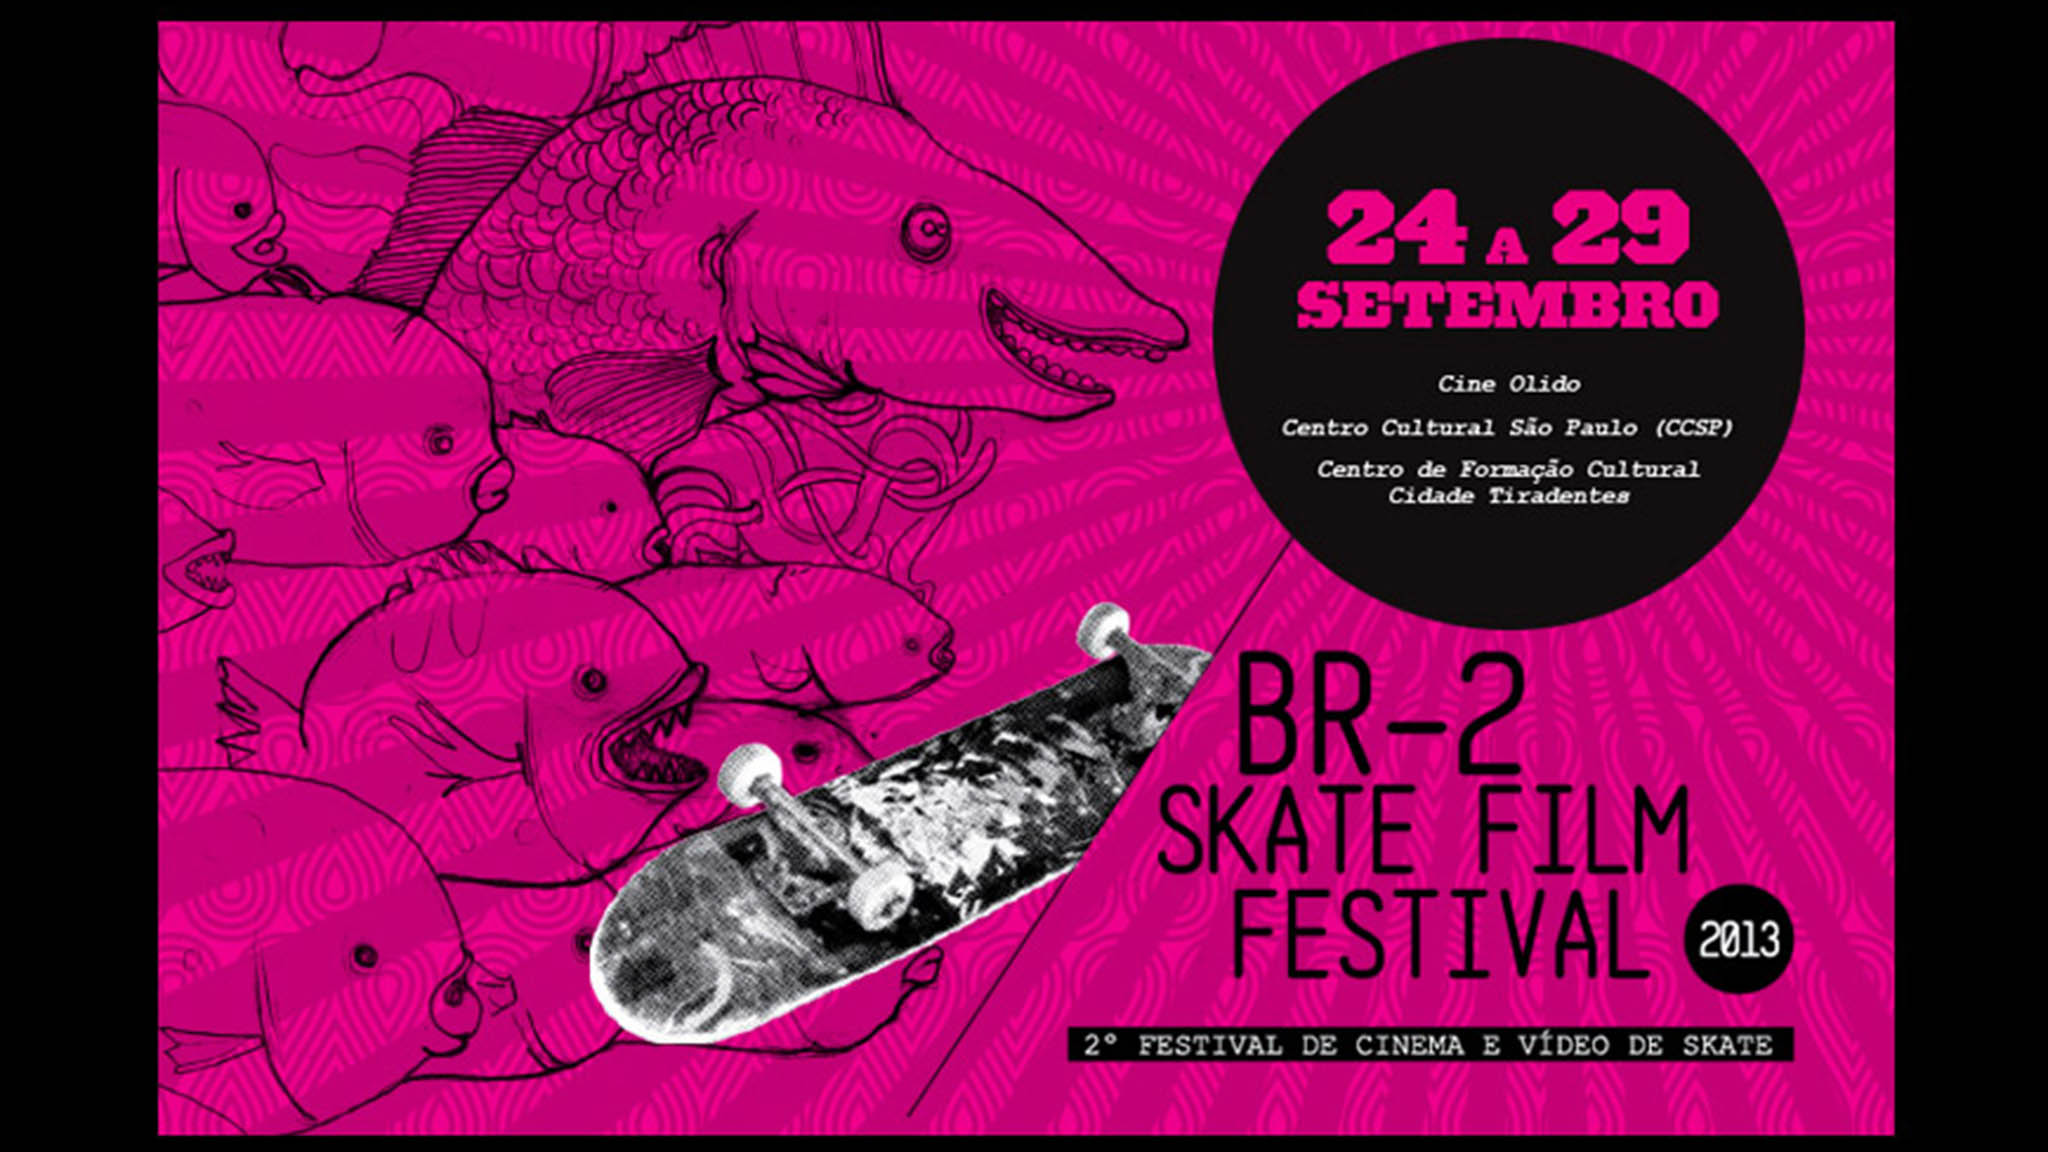 BR2 SKATE FILM FESTIVAL 2013